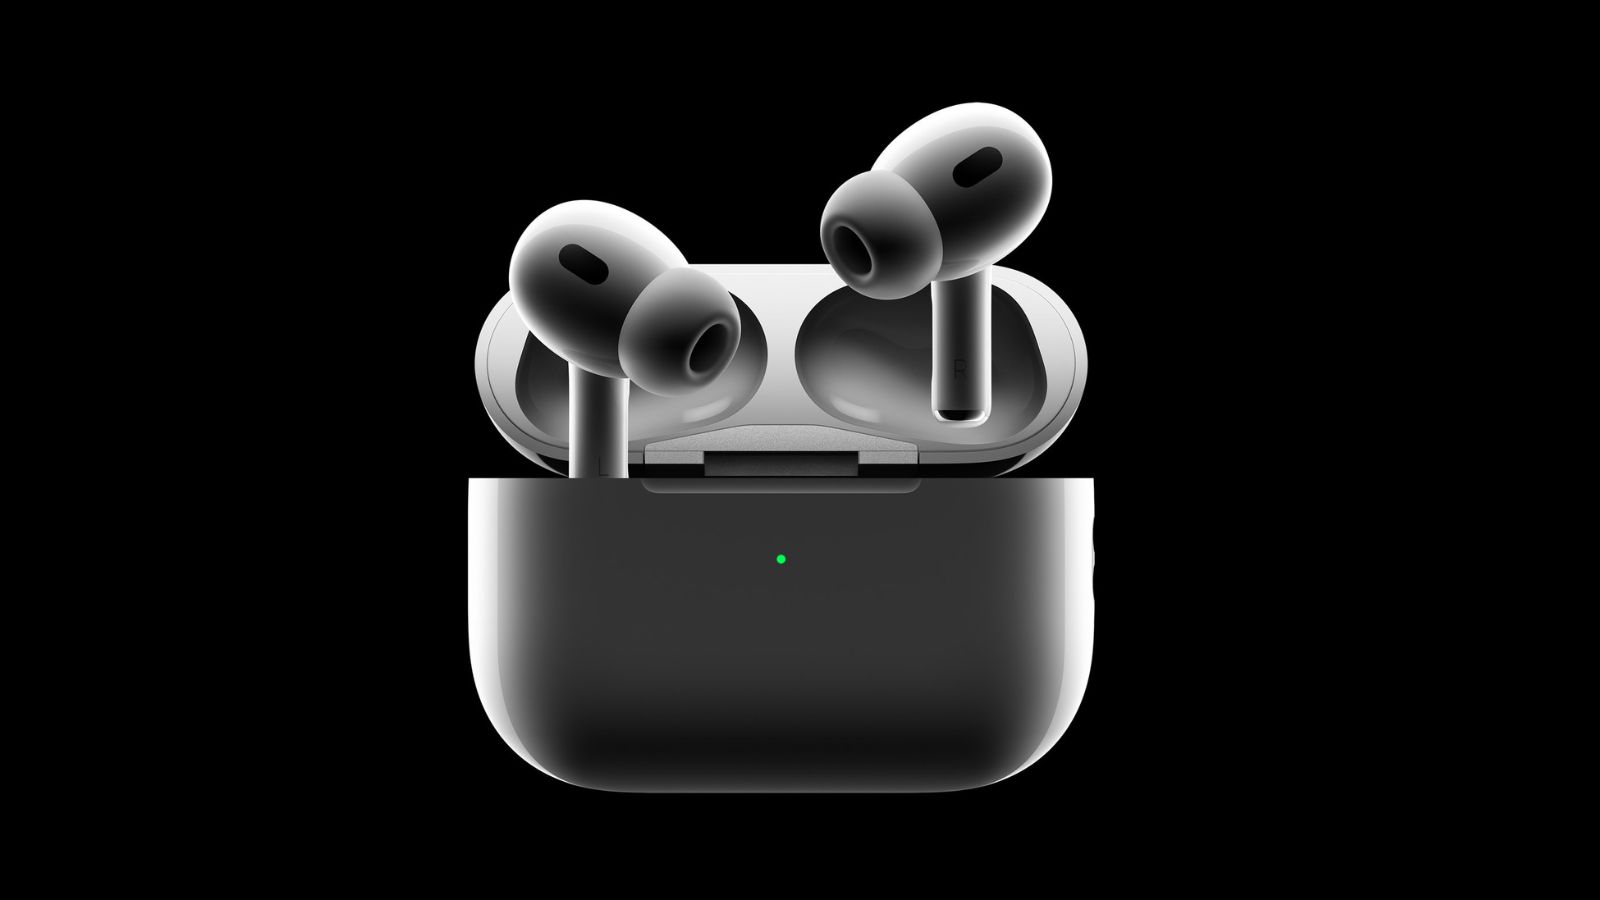 Probamos los Airpods Pro 2: así suena lo mejor de Apple